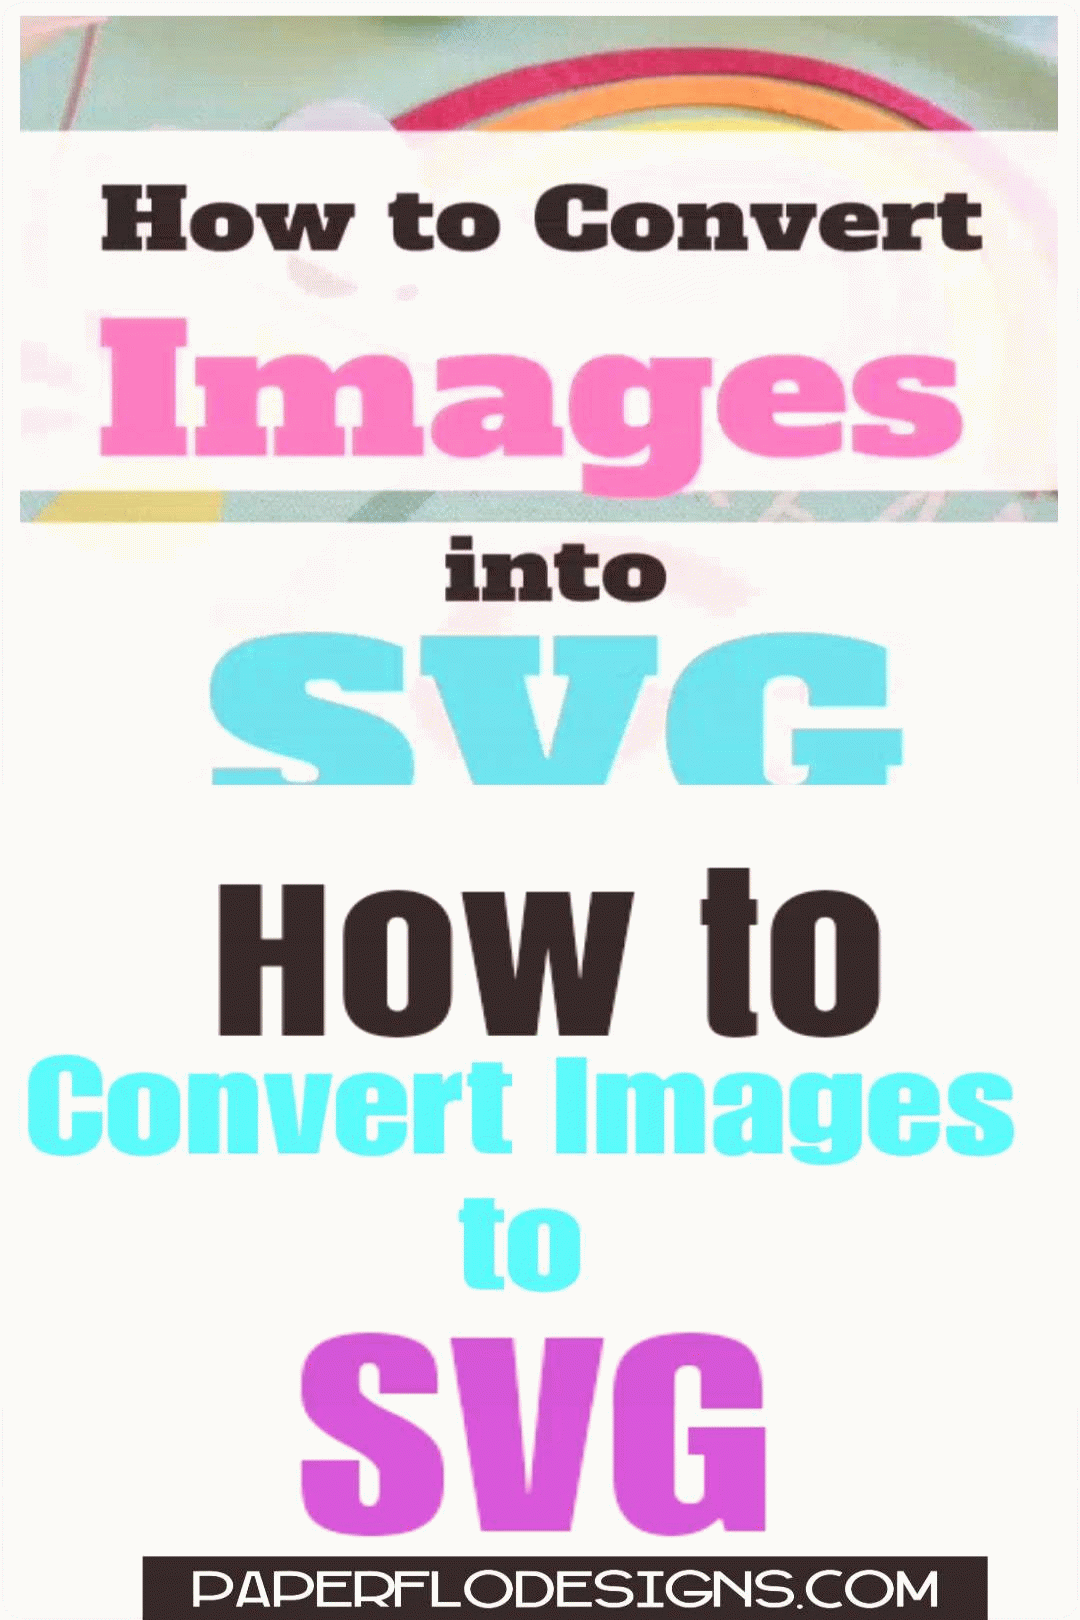 Görüntüleri Svg'ye Dönüştürebilir misiniz?